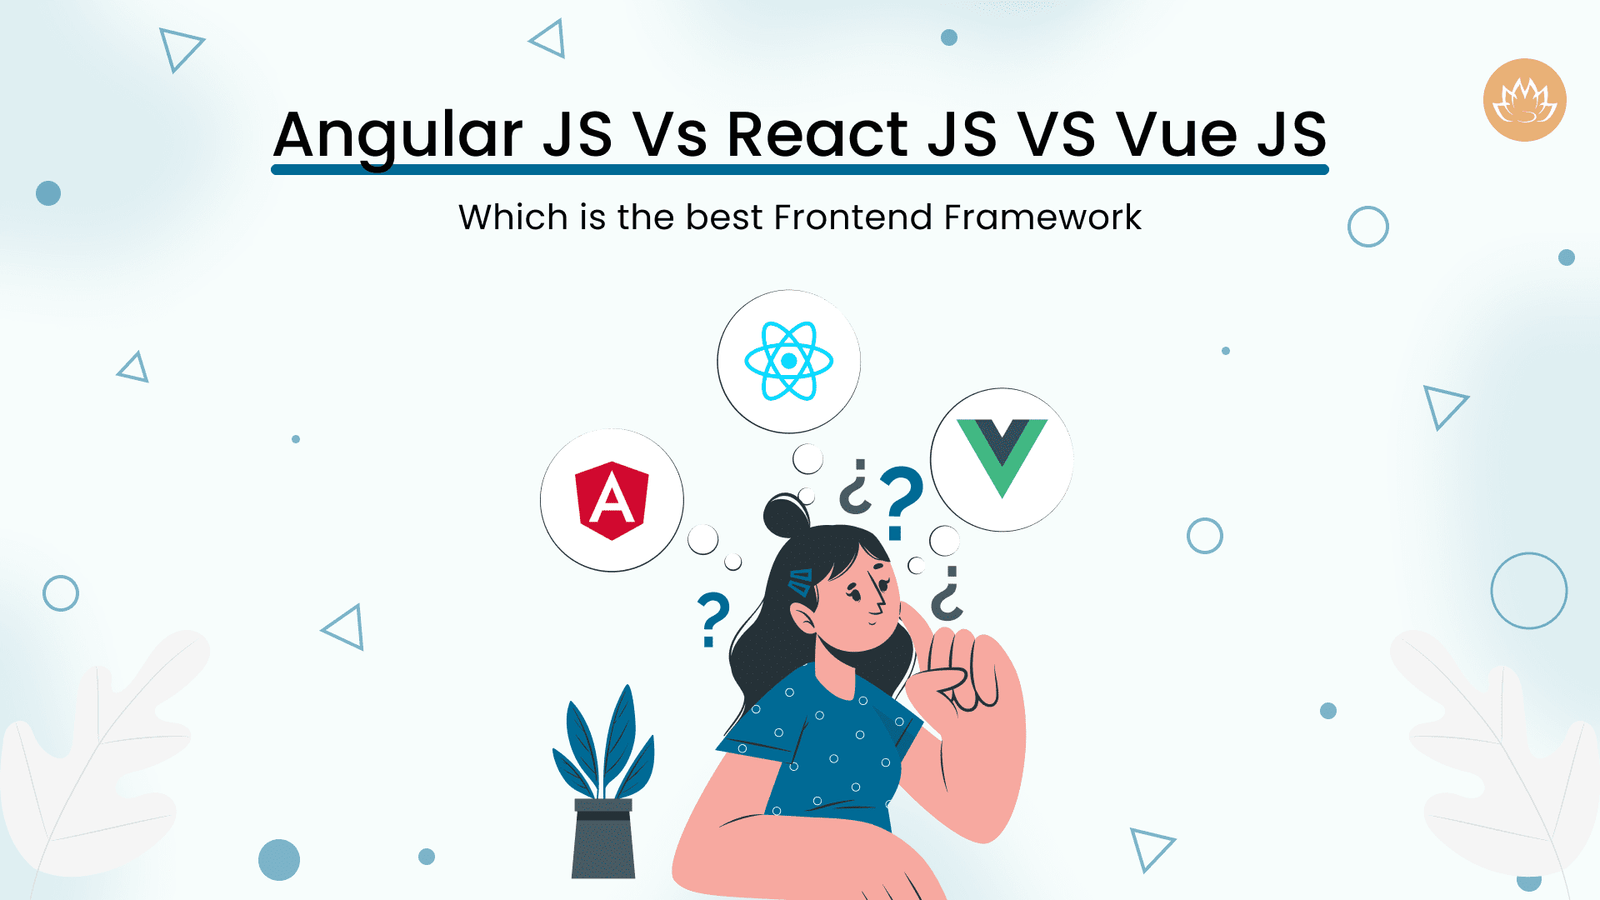 Angular JS Vs React JS VS Vue JS